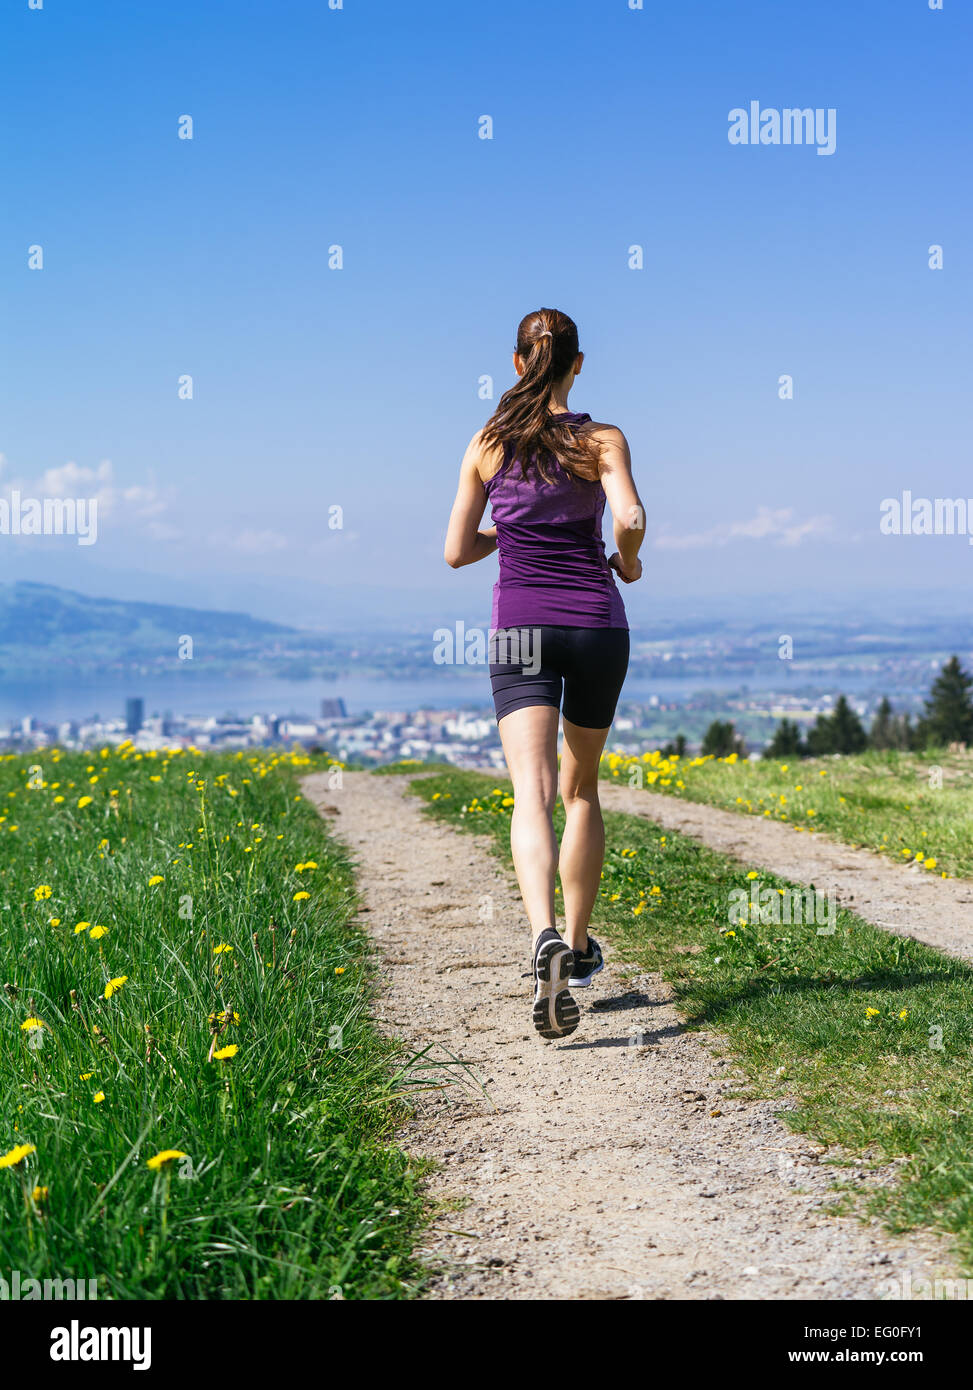 Foto de una mujer joven trotar y hacer ejercicio en un país camino. El lago y la ciudad en la distancia. Ligero desenfoque de movimiento visible. Foto de stock